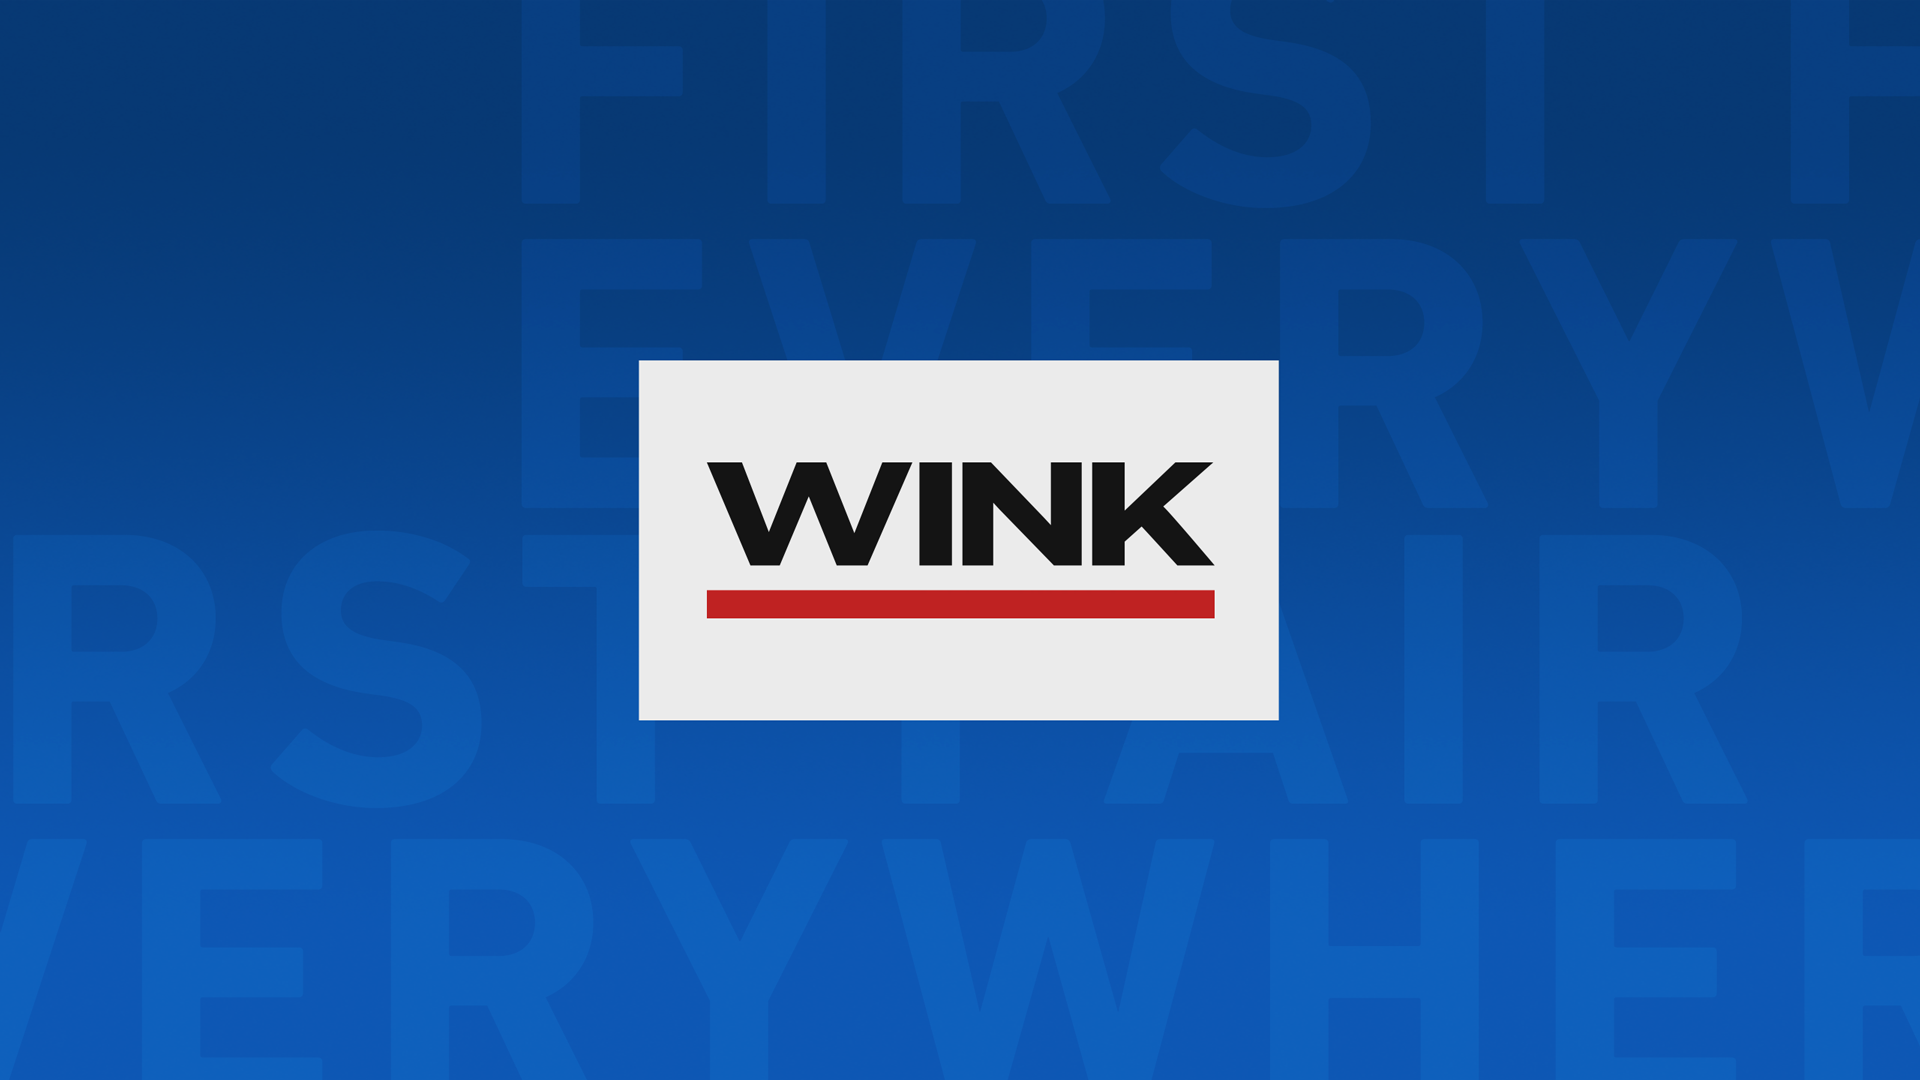 WINK News at 11:30